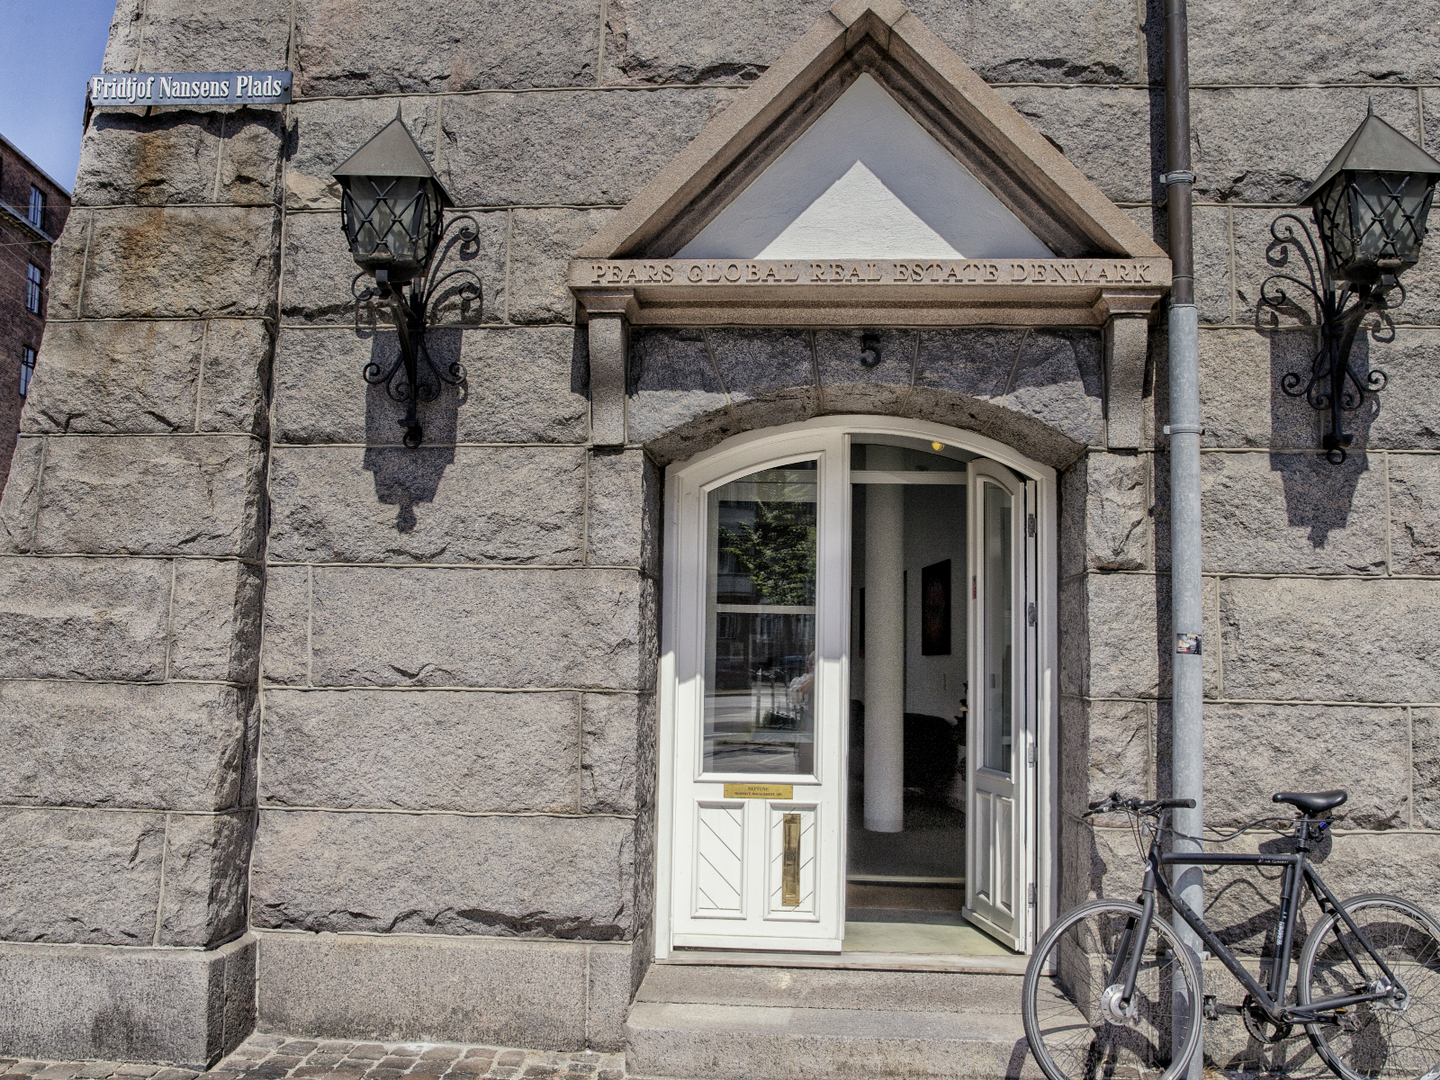 Pears Global Real Estate kom til Danmark i 2012. Virksomheden har kontor på Østerbro i København, hvorfra den rådgiver The Pears Family Trust om alle aspekter af ejendomsbesiddelse, herunder opkøb, finansiering, formueforvaltning og frasalg. | Foto: PR-foto